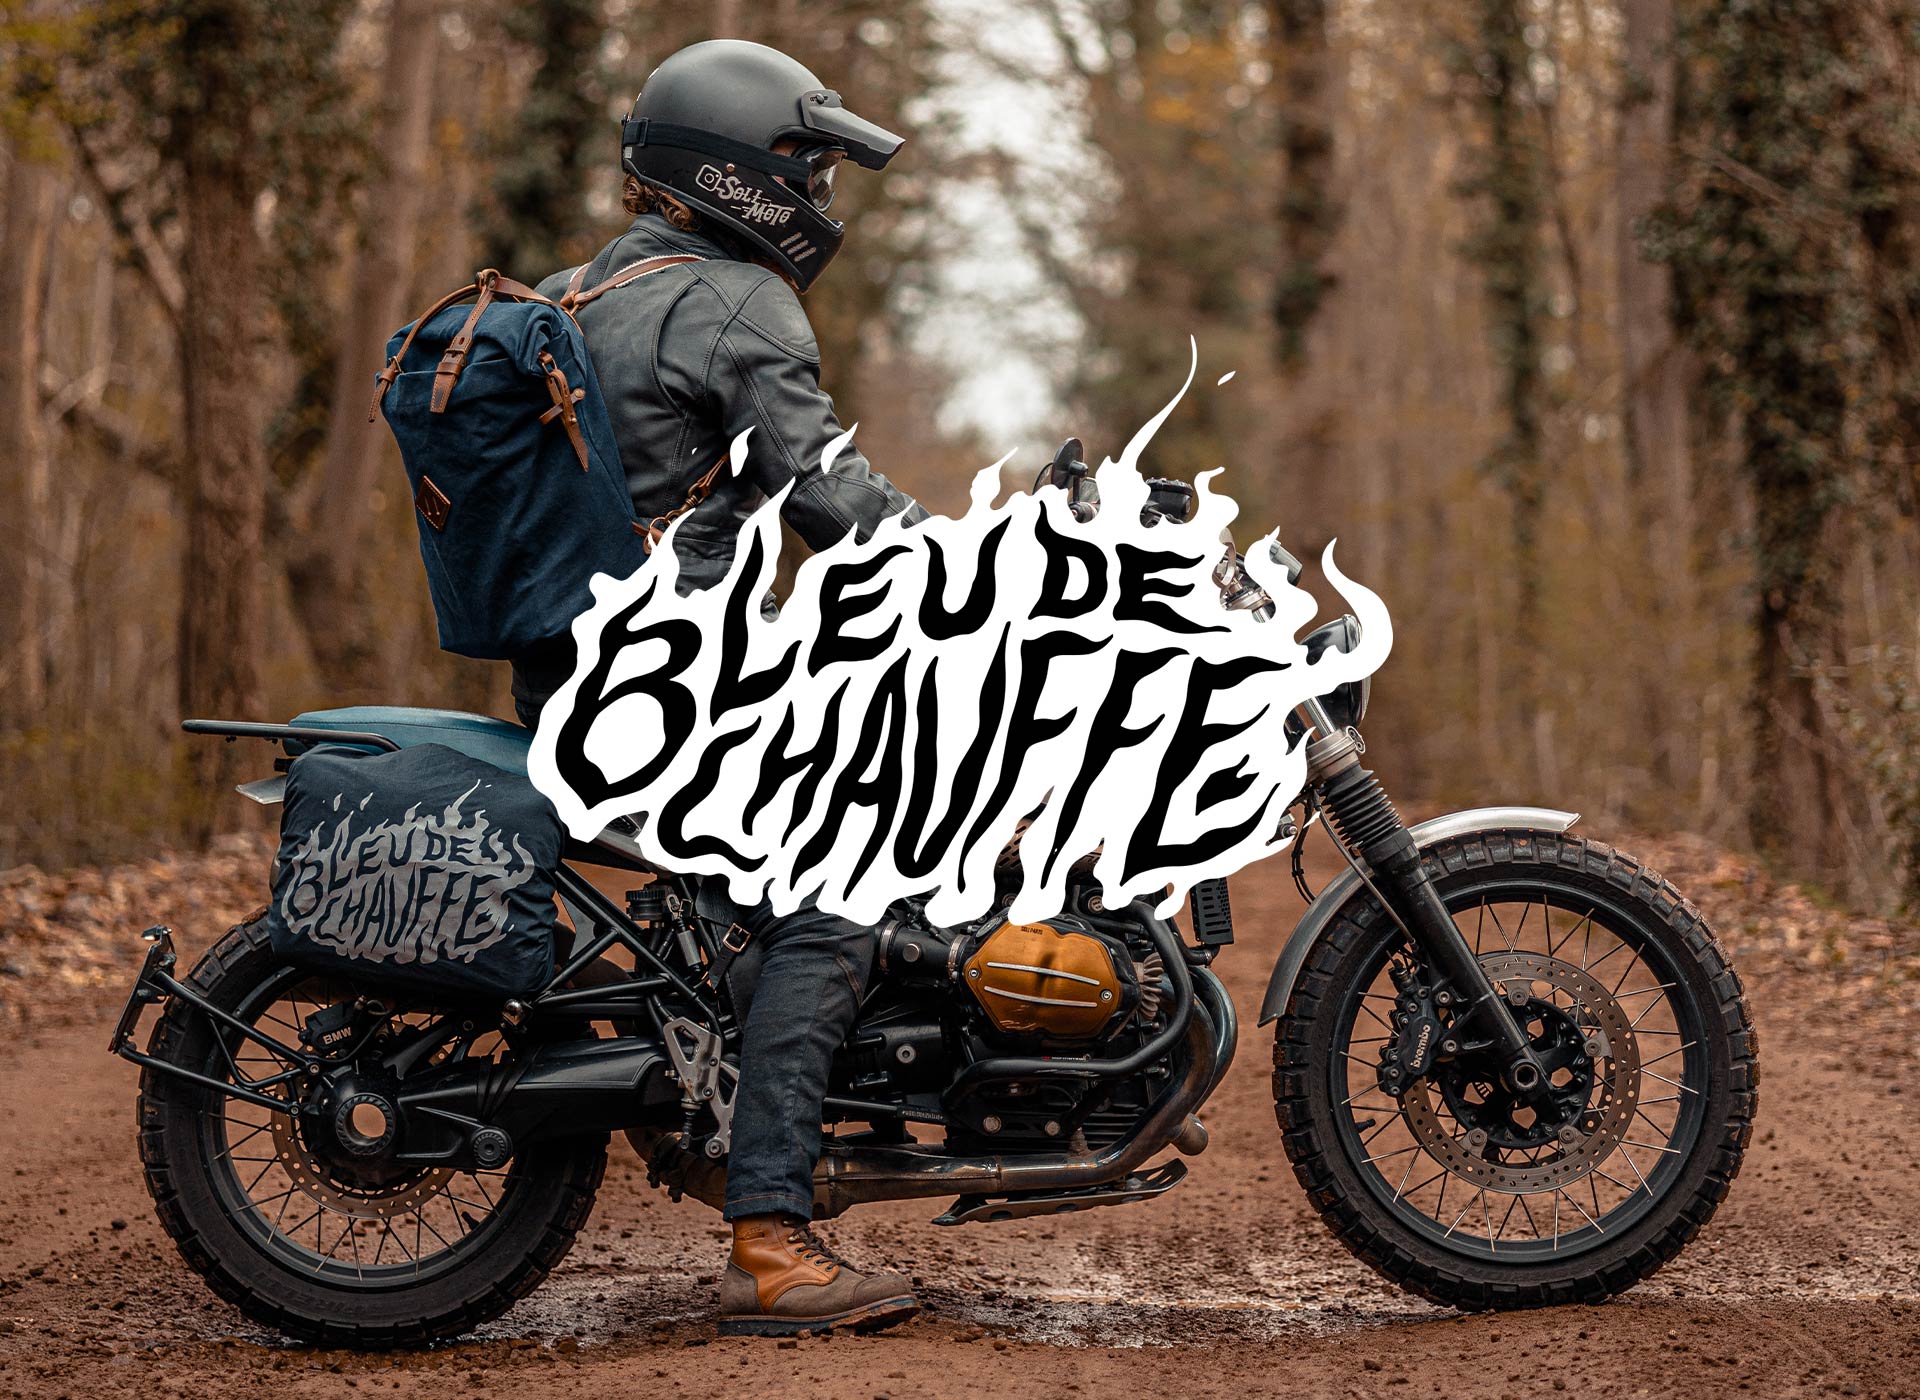 Image de présentation de la ligne moto de Bleu de Chauffe